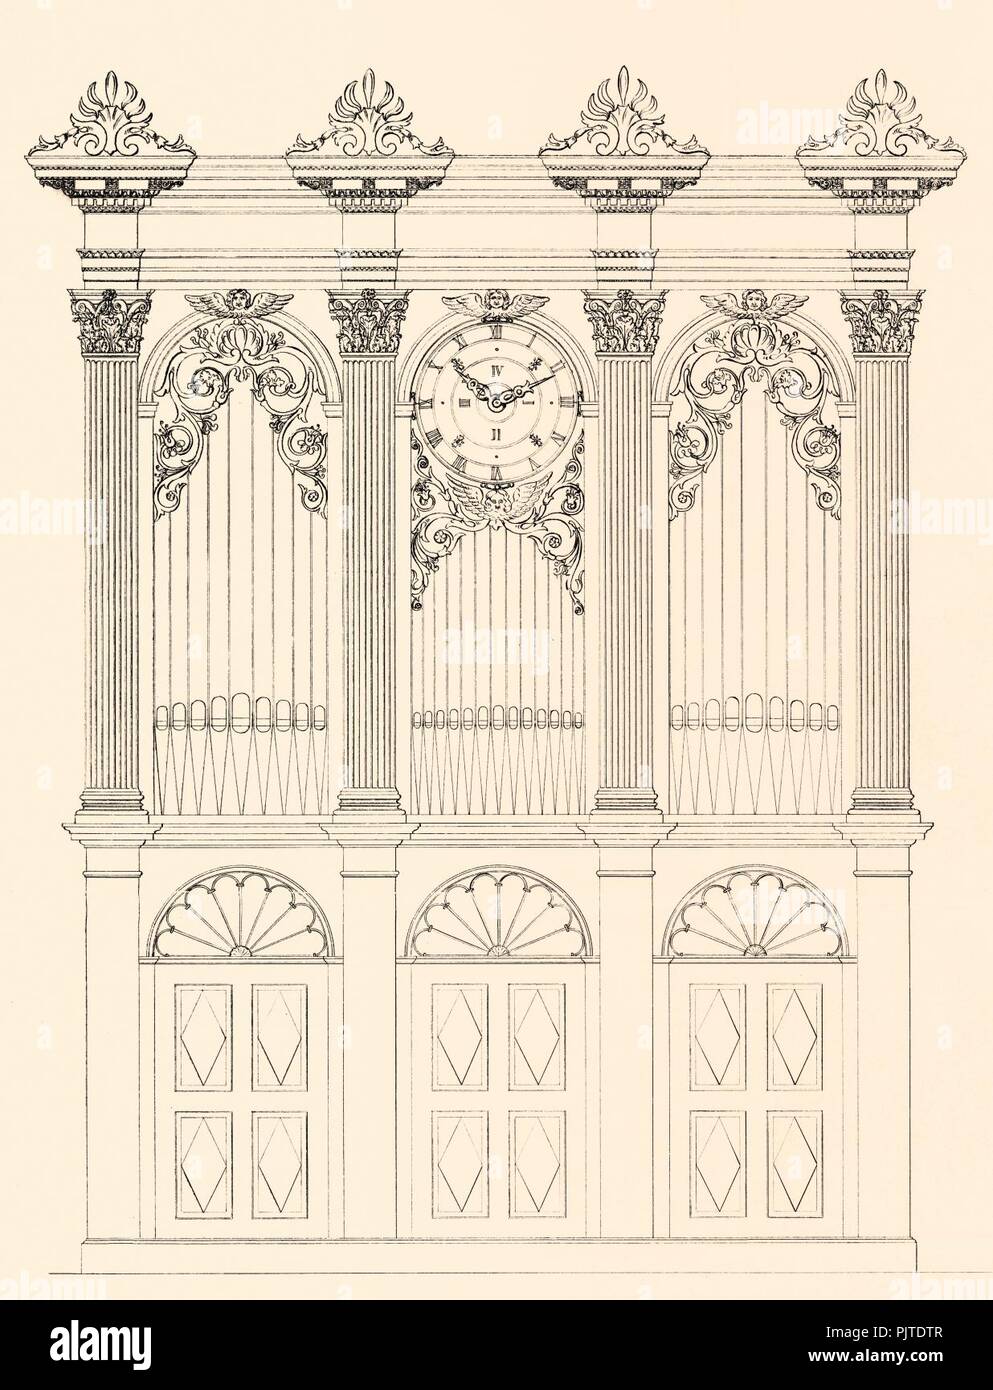 Bearbeiteter Entwurf für Großgmain 1844 gezeichnet Louis Mooser. Stock Photo